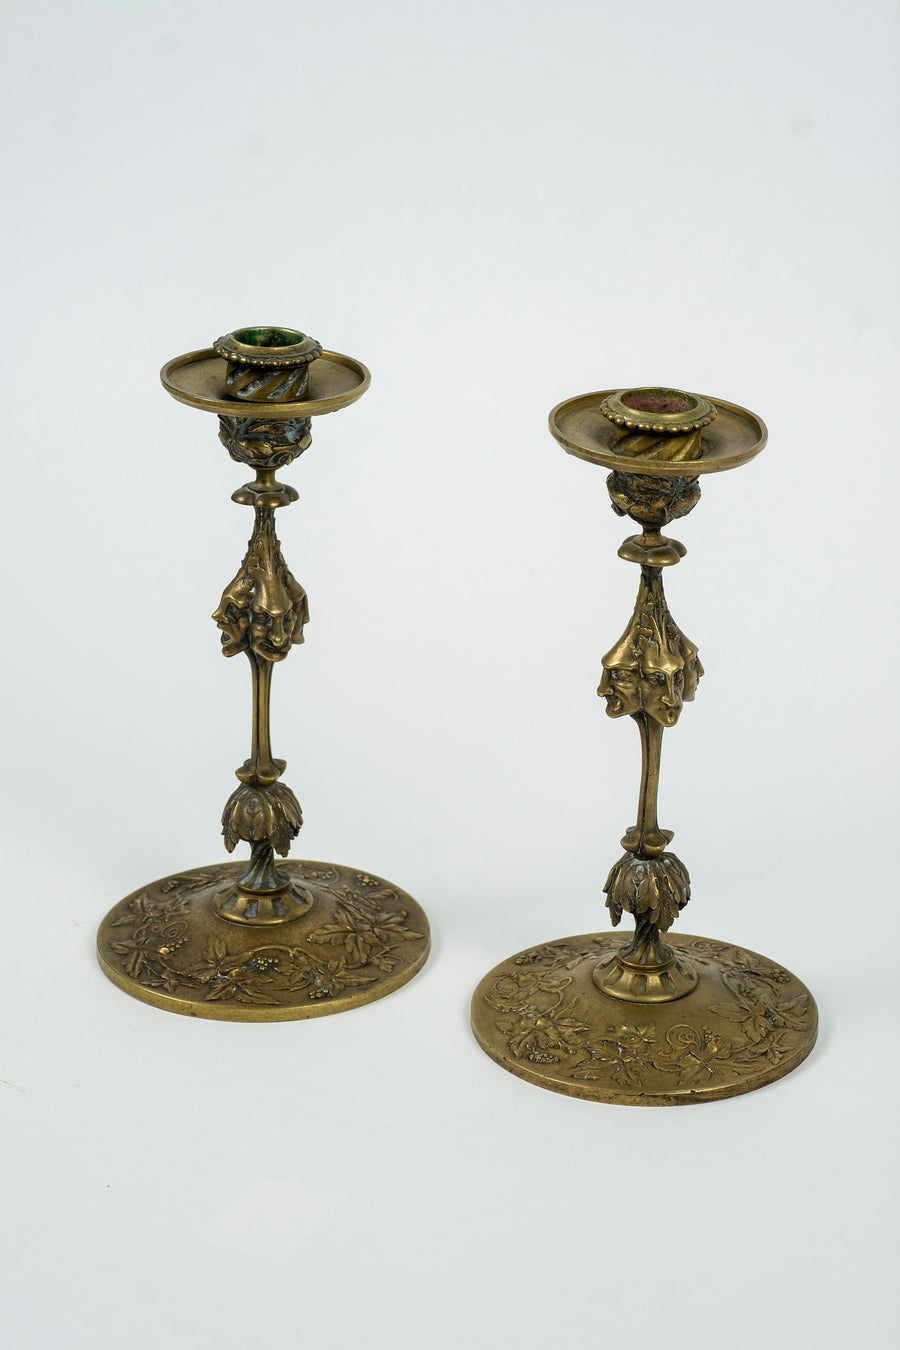 Pair Four-Faced Brass Candlesticks